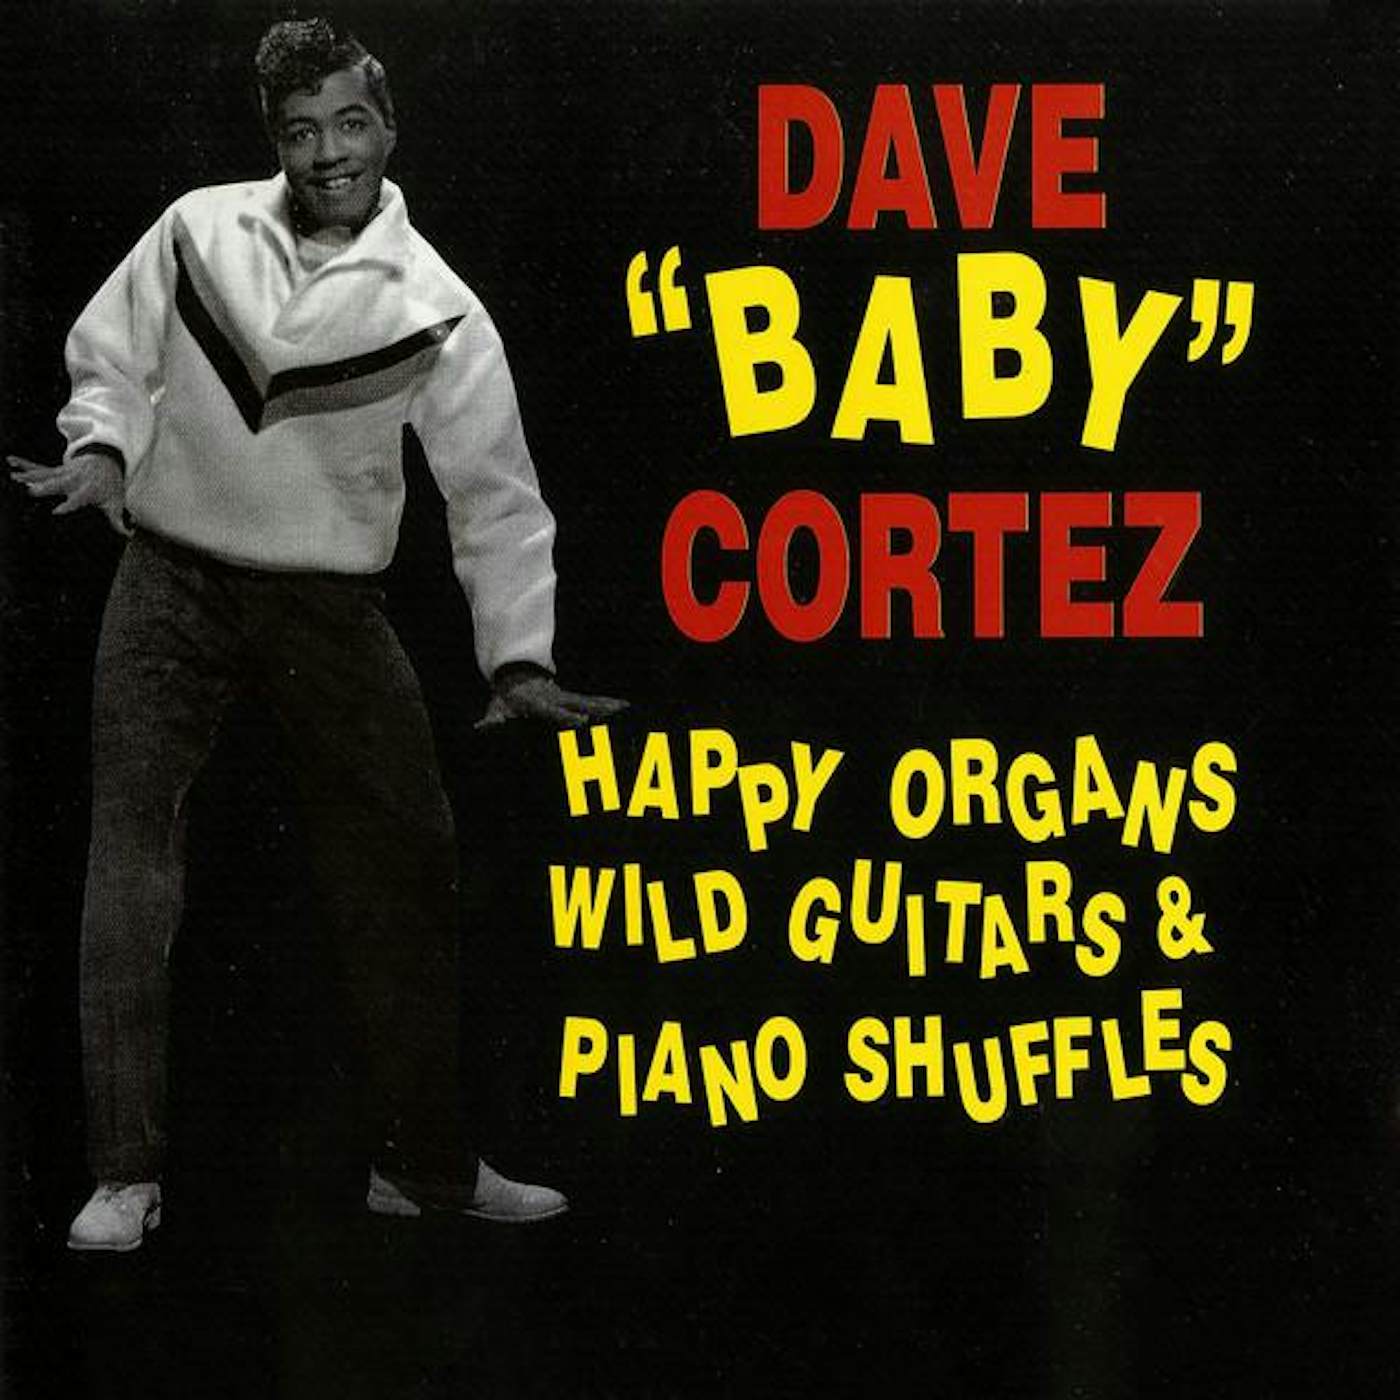 Dave "Baby" Cortez